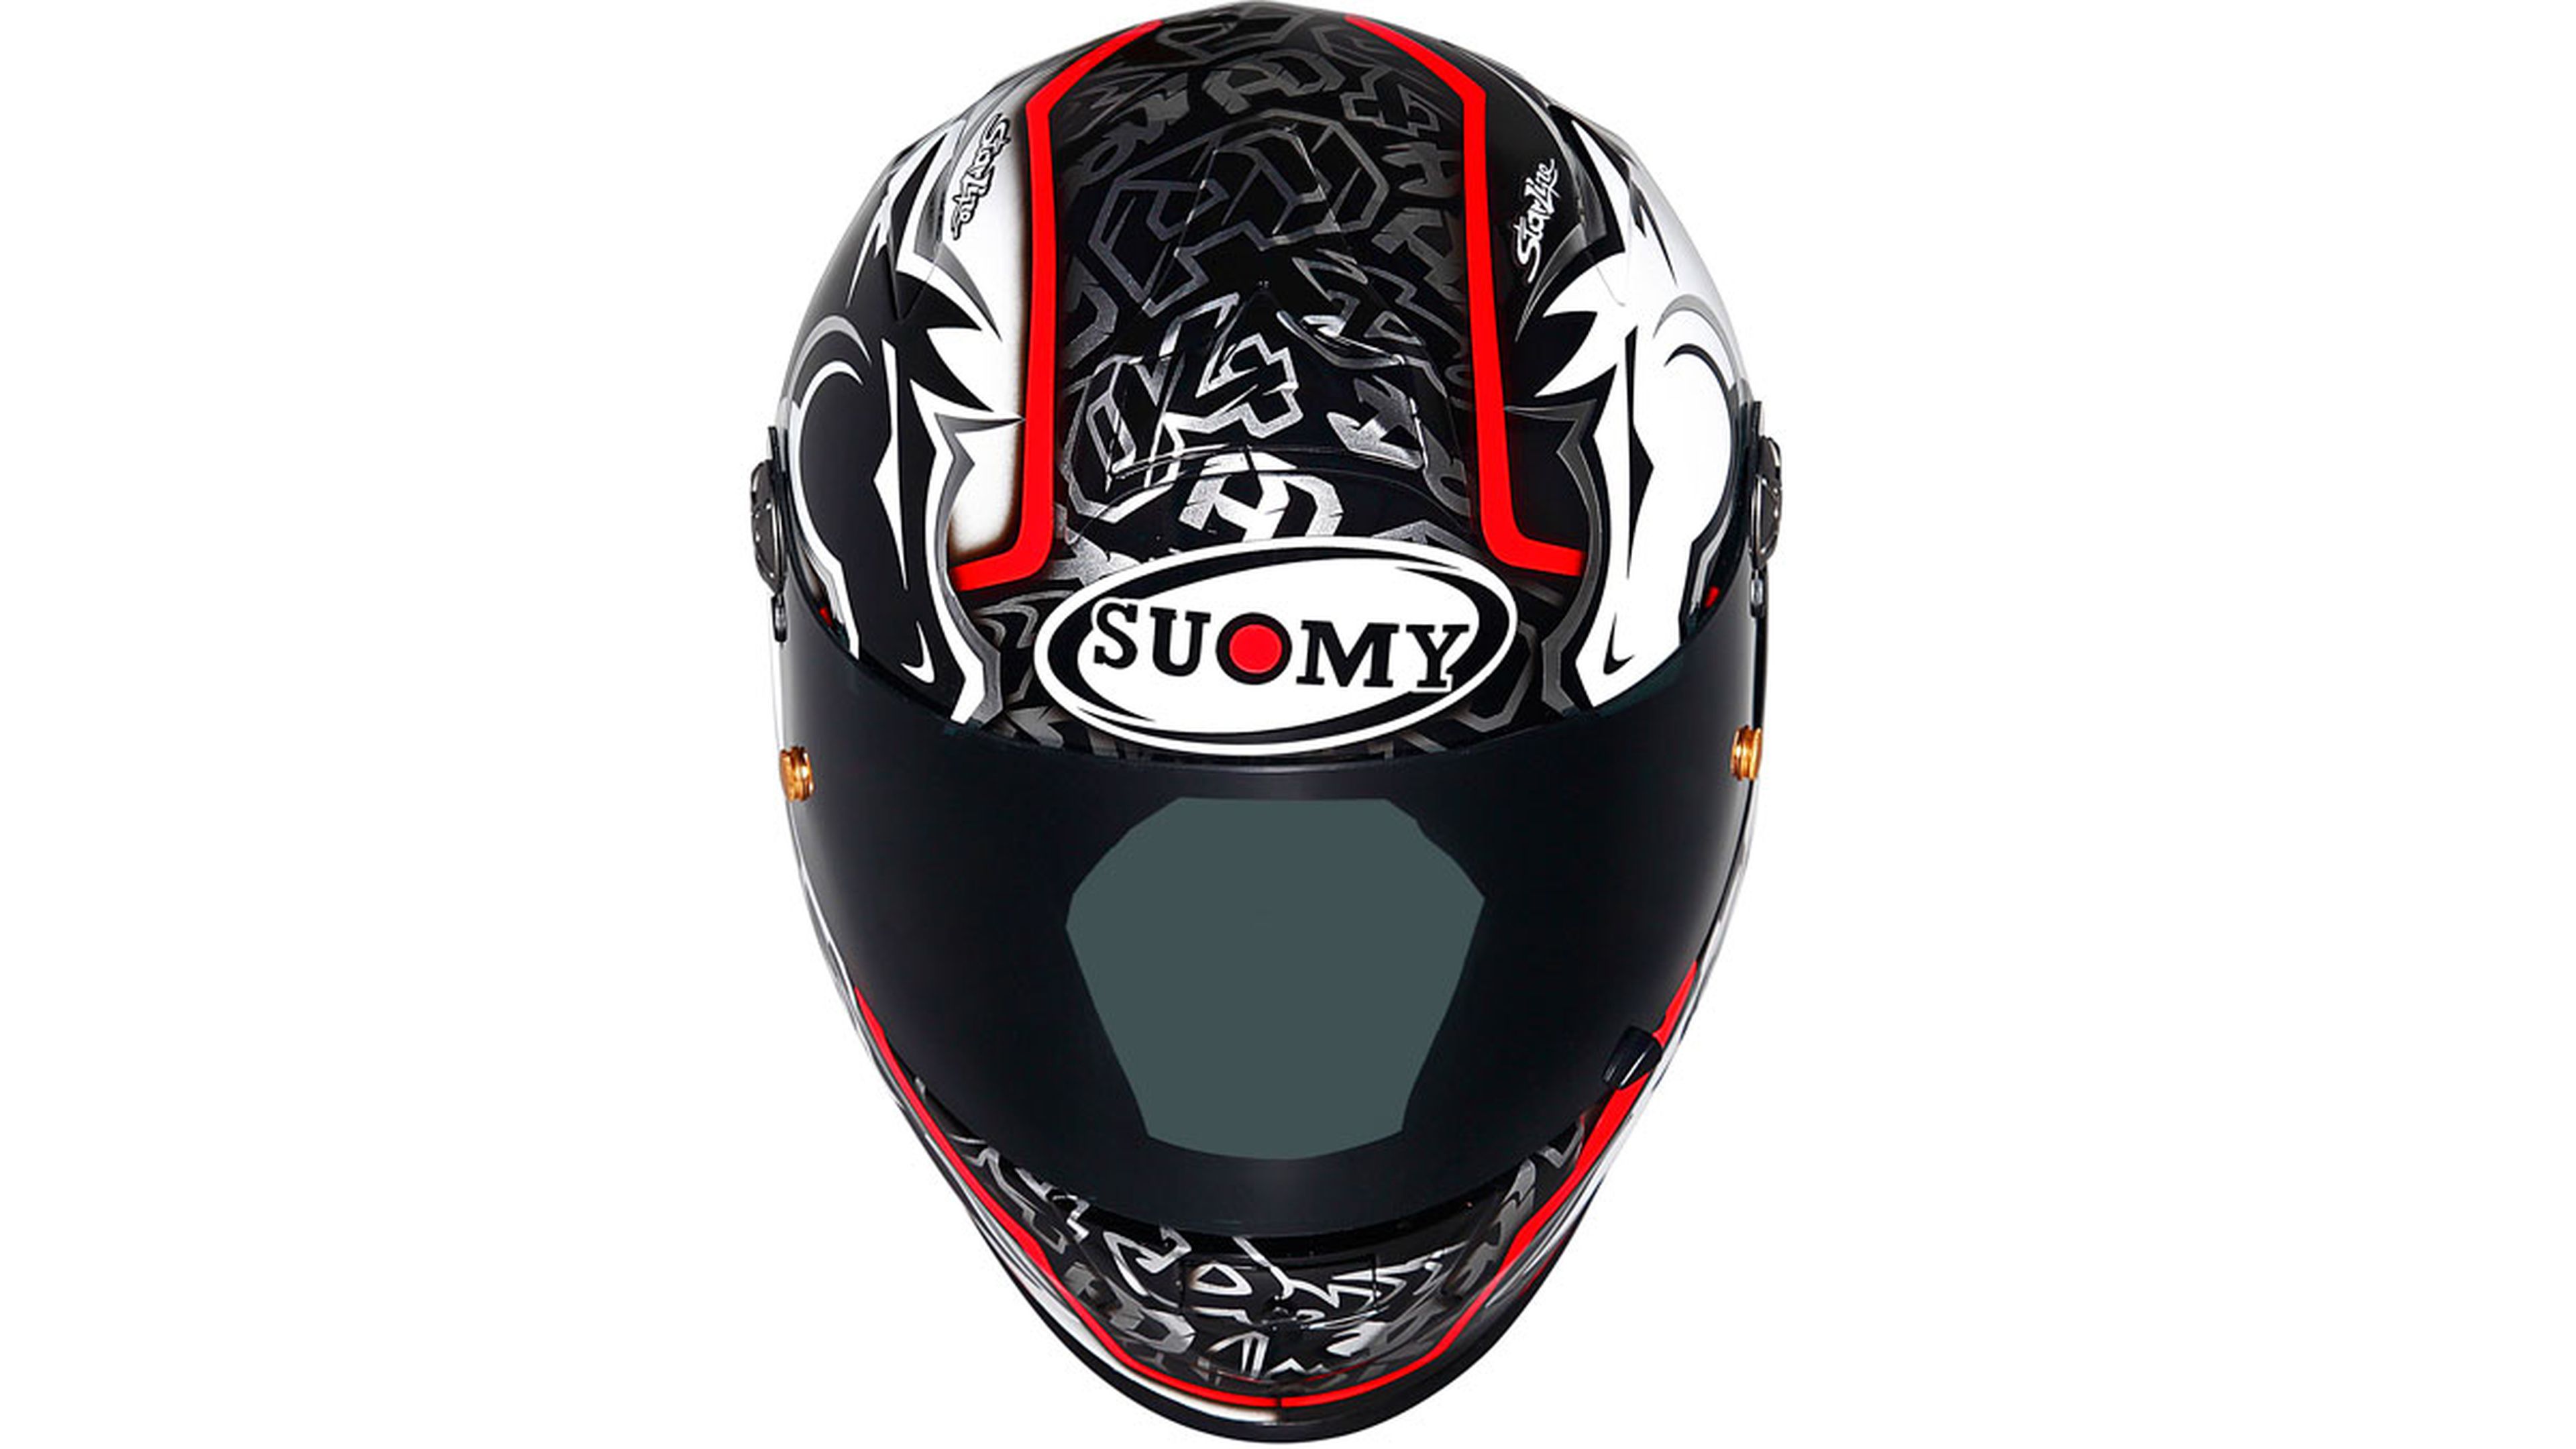 Dovizioso usa un casco muy parecido al nuevo Suomy XR Sport